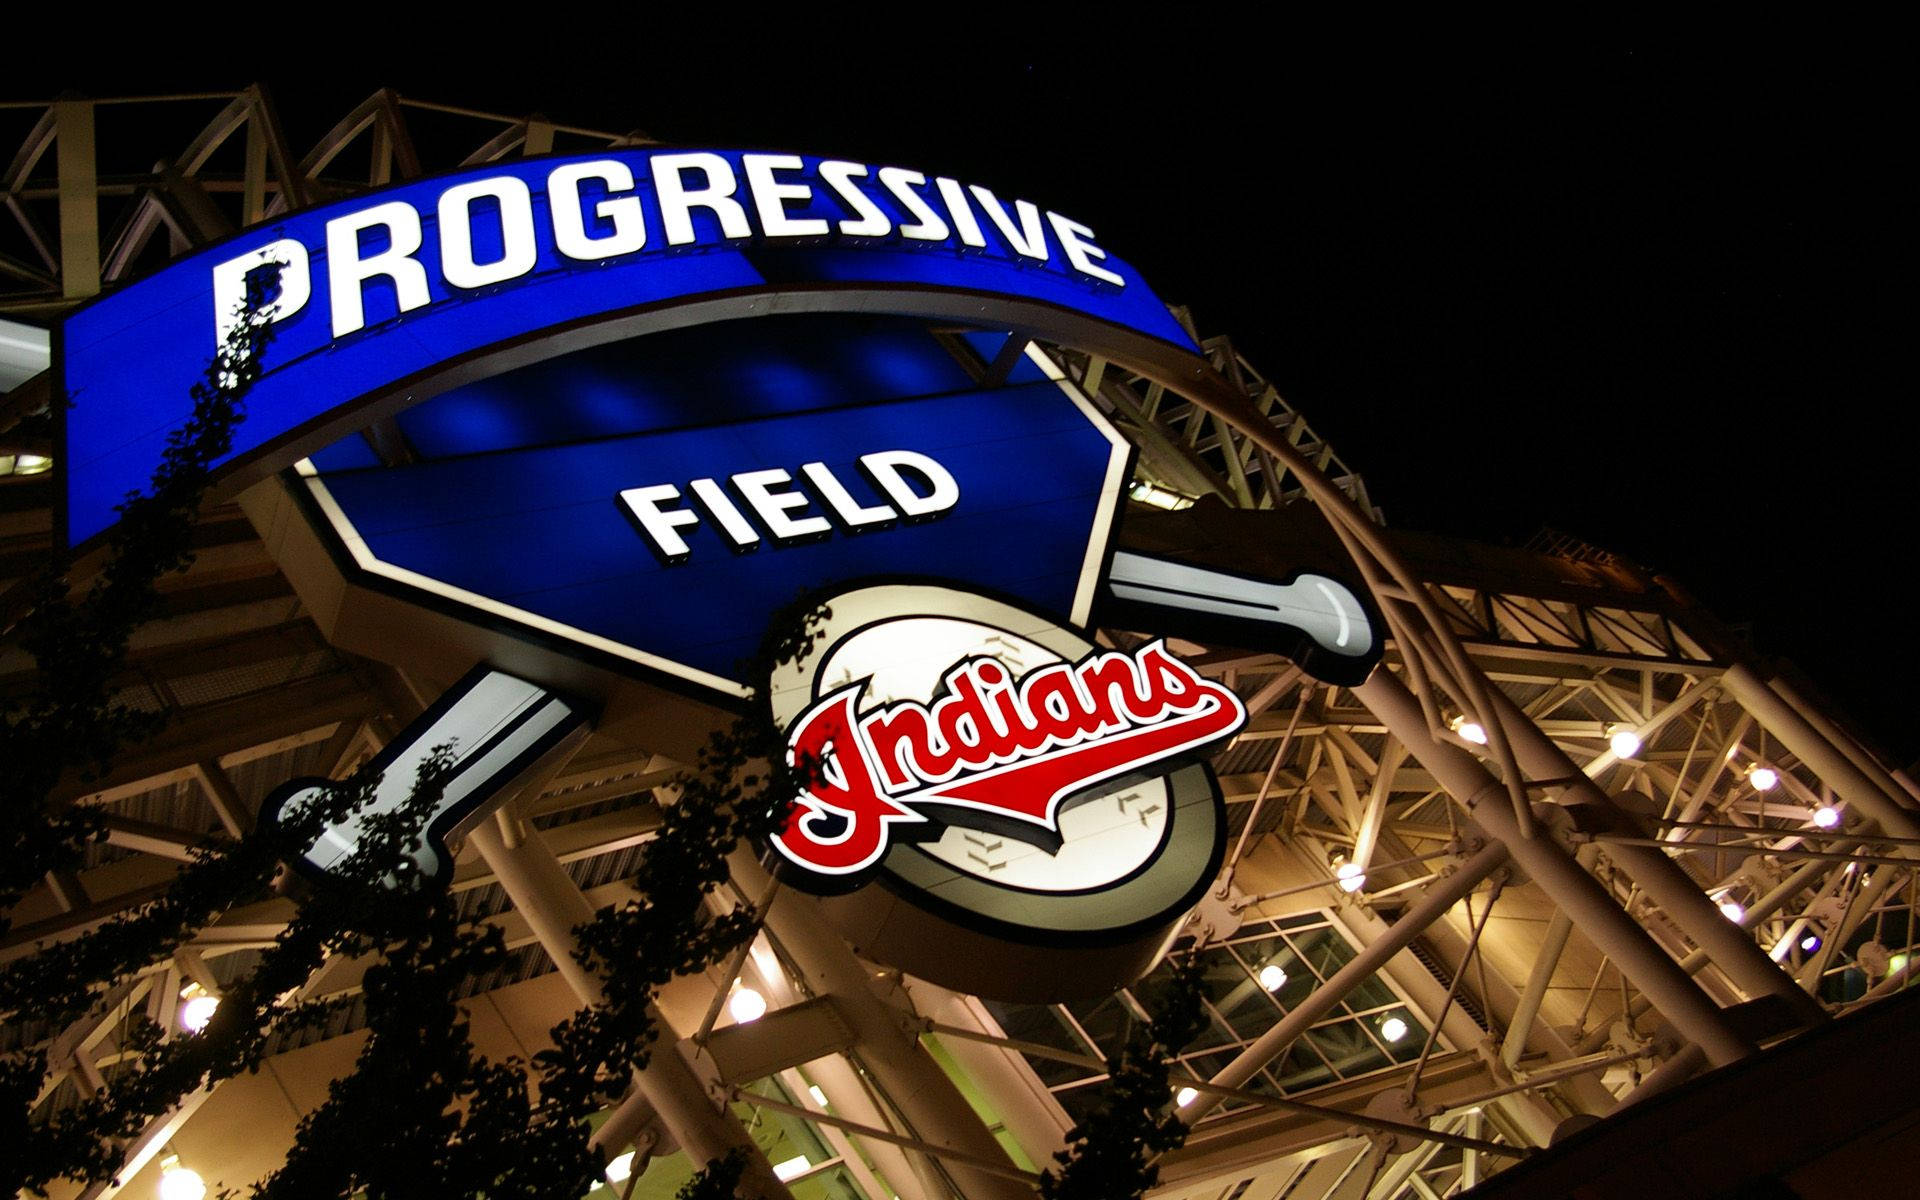 Entradaal Progressive Field De Los Cleveland Indians Fondo de pantalla